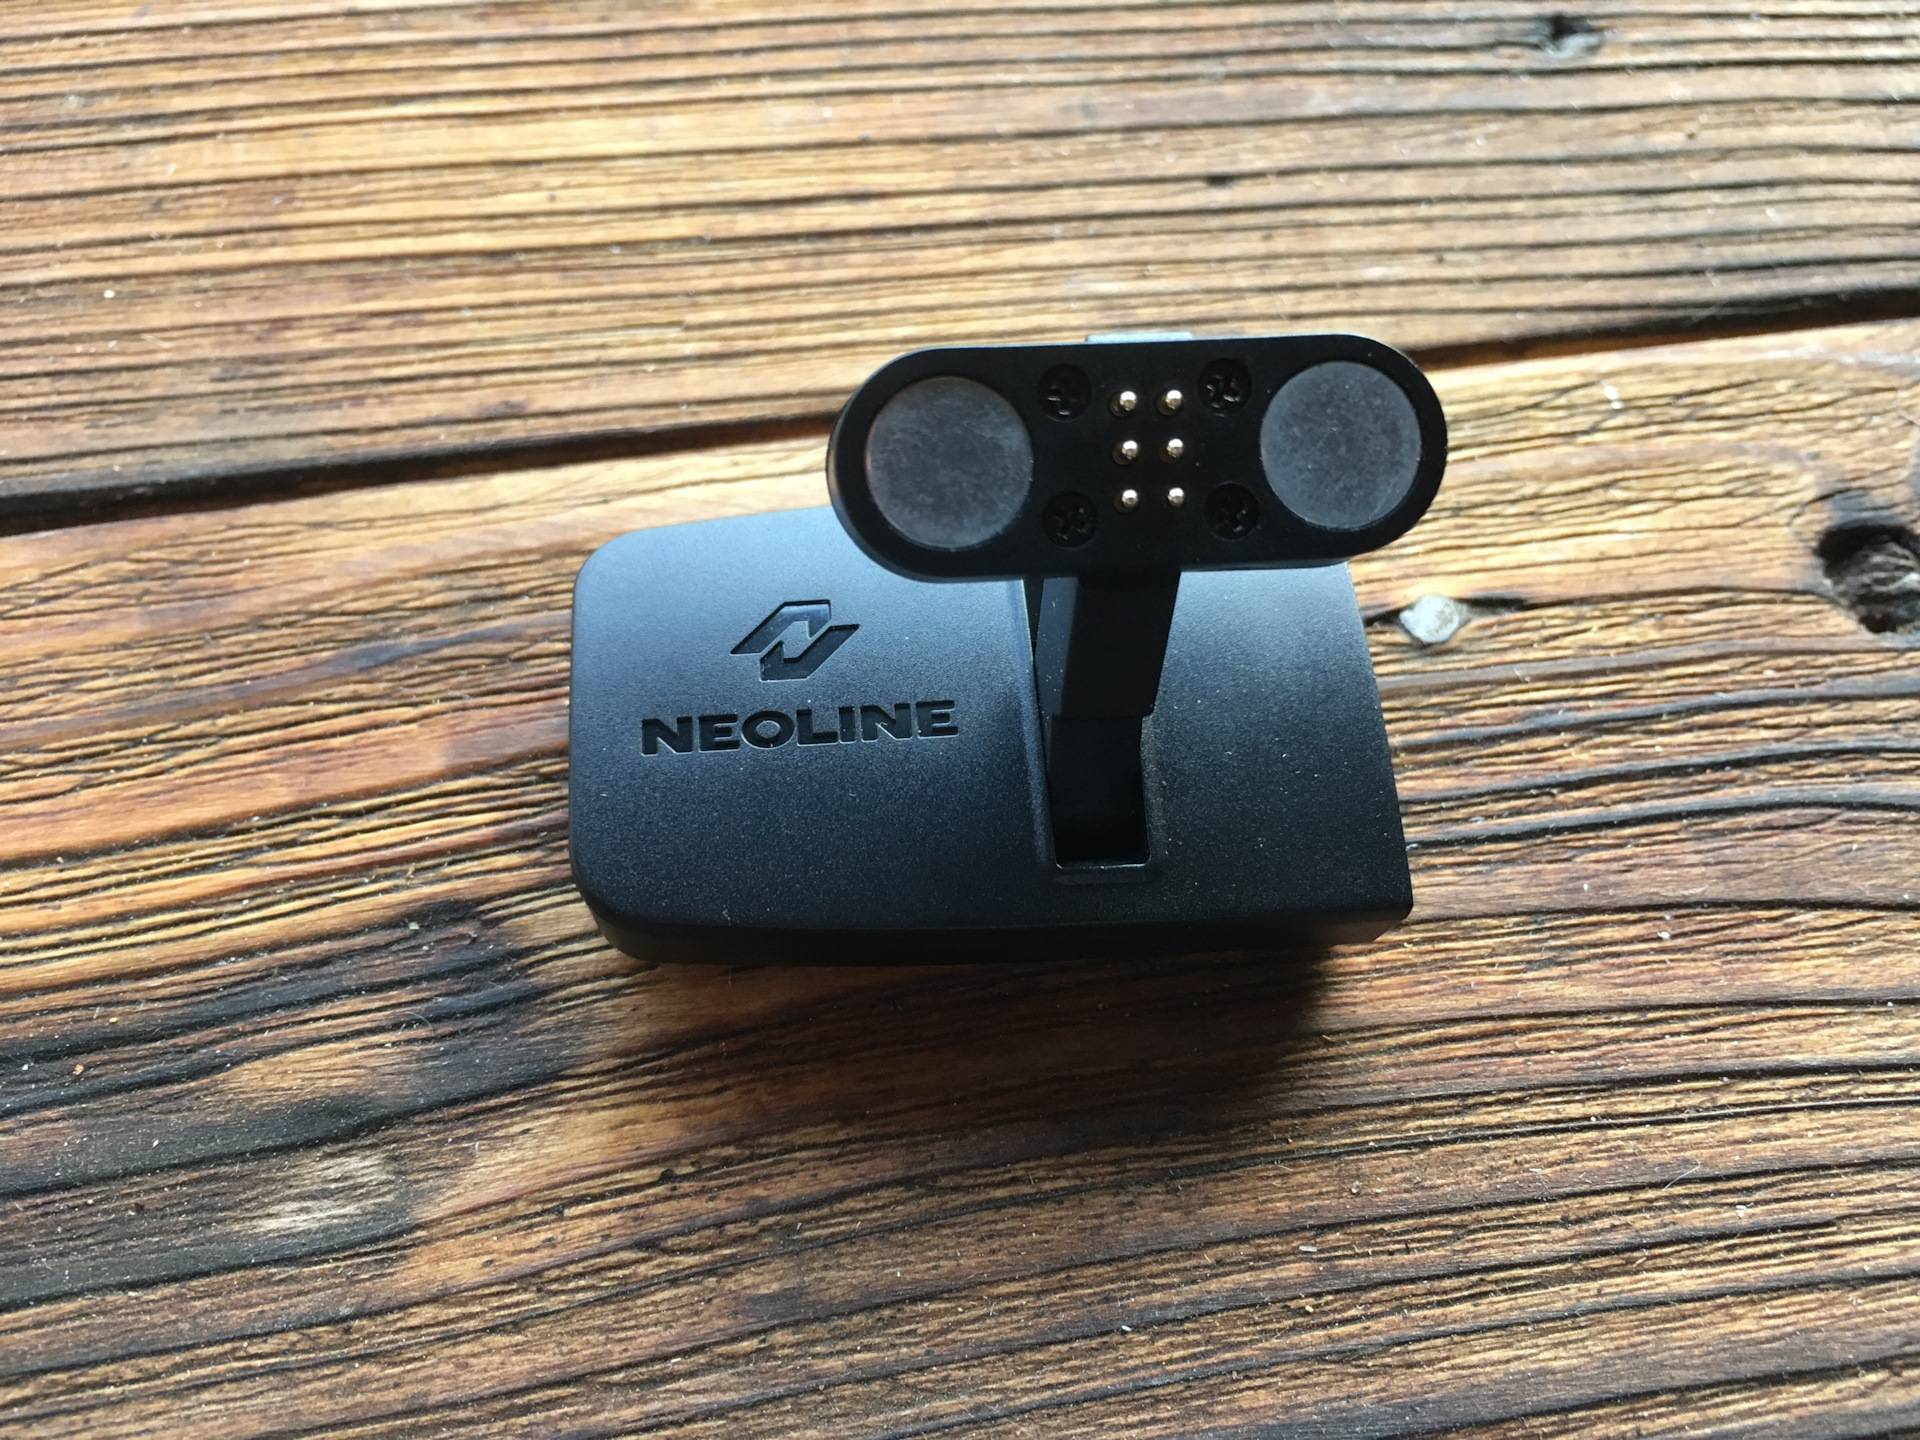 Neoline g-tech x-77 отзывы